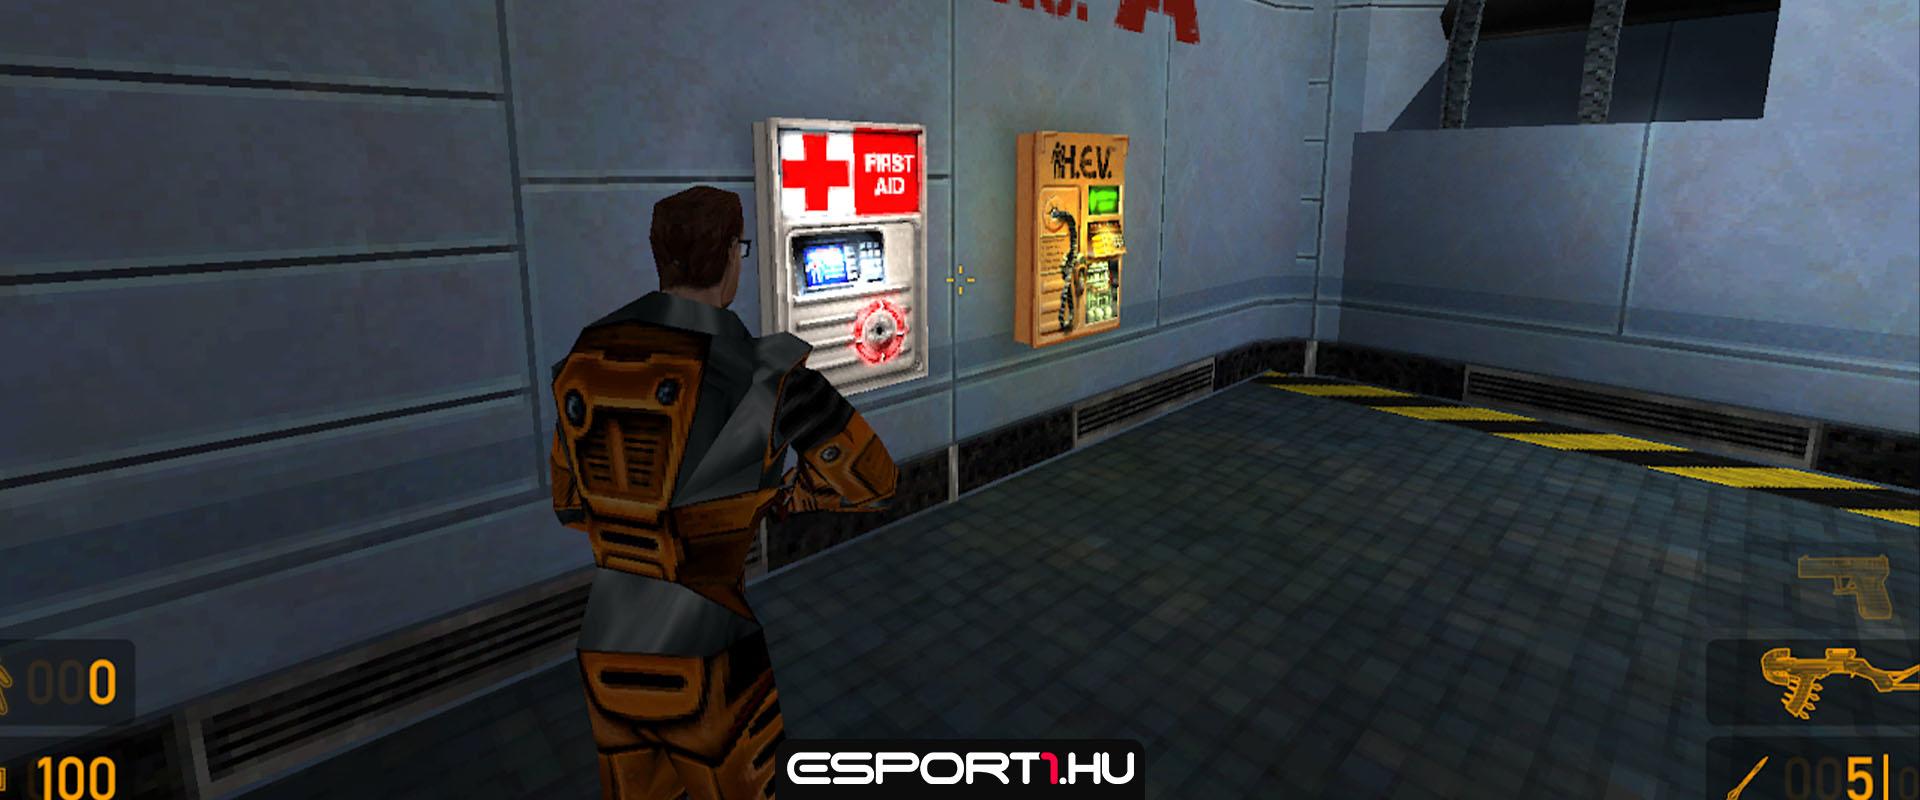 A Valve engedélyezte az új rajongói Half-Life játékot, egy feltétellel